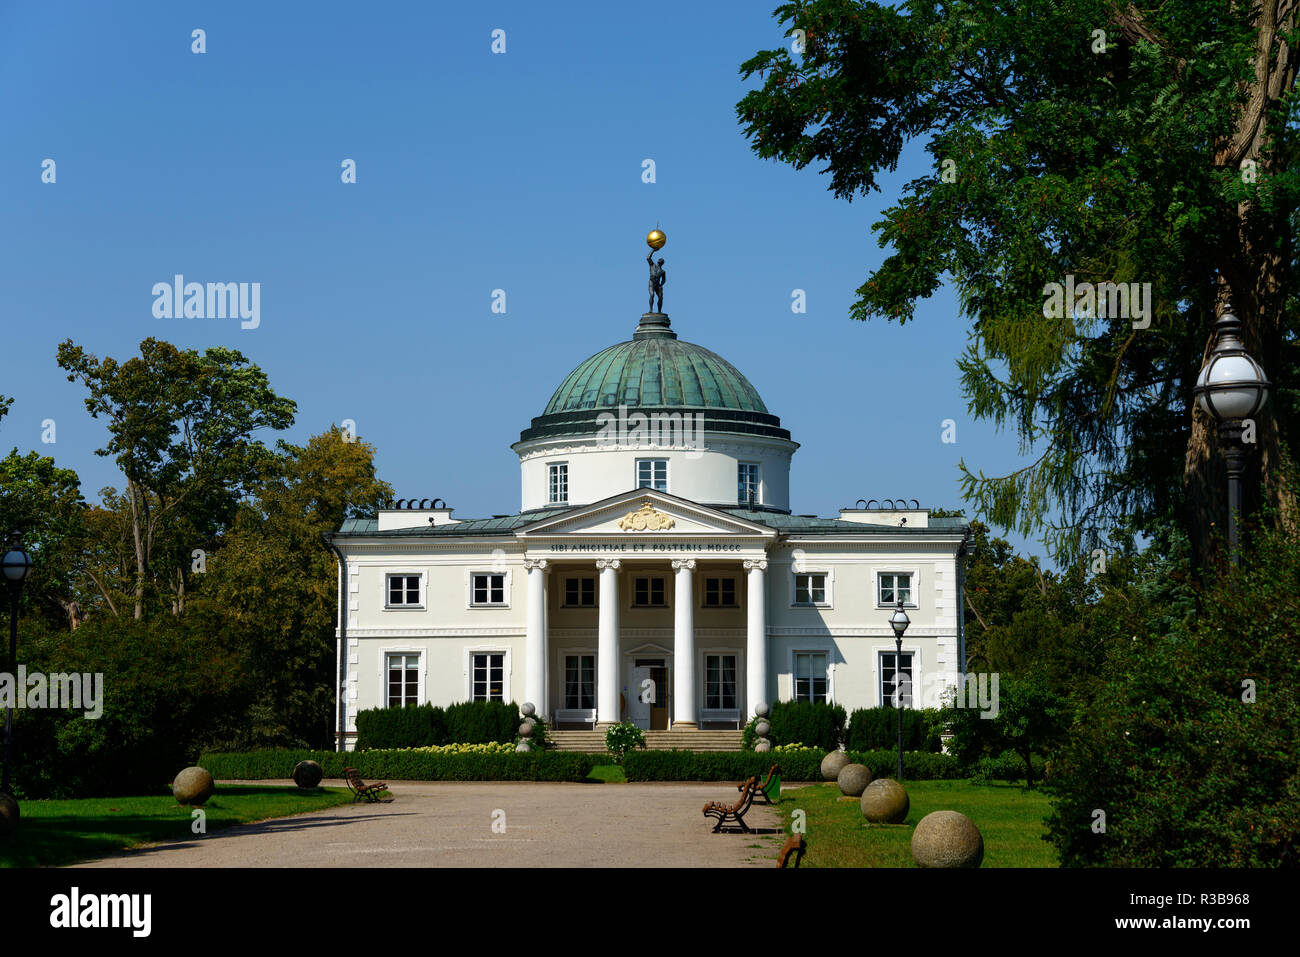 Lubostron Palace, Lubostron, Pomerania, Poland Stock Photo